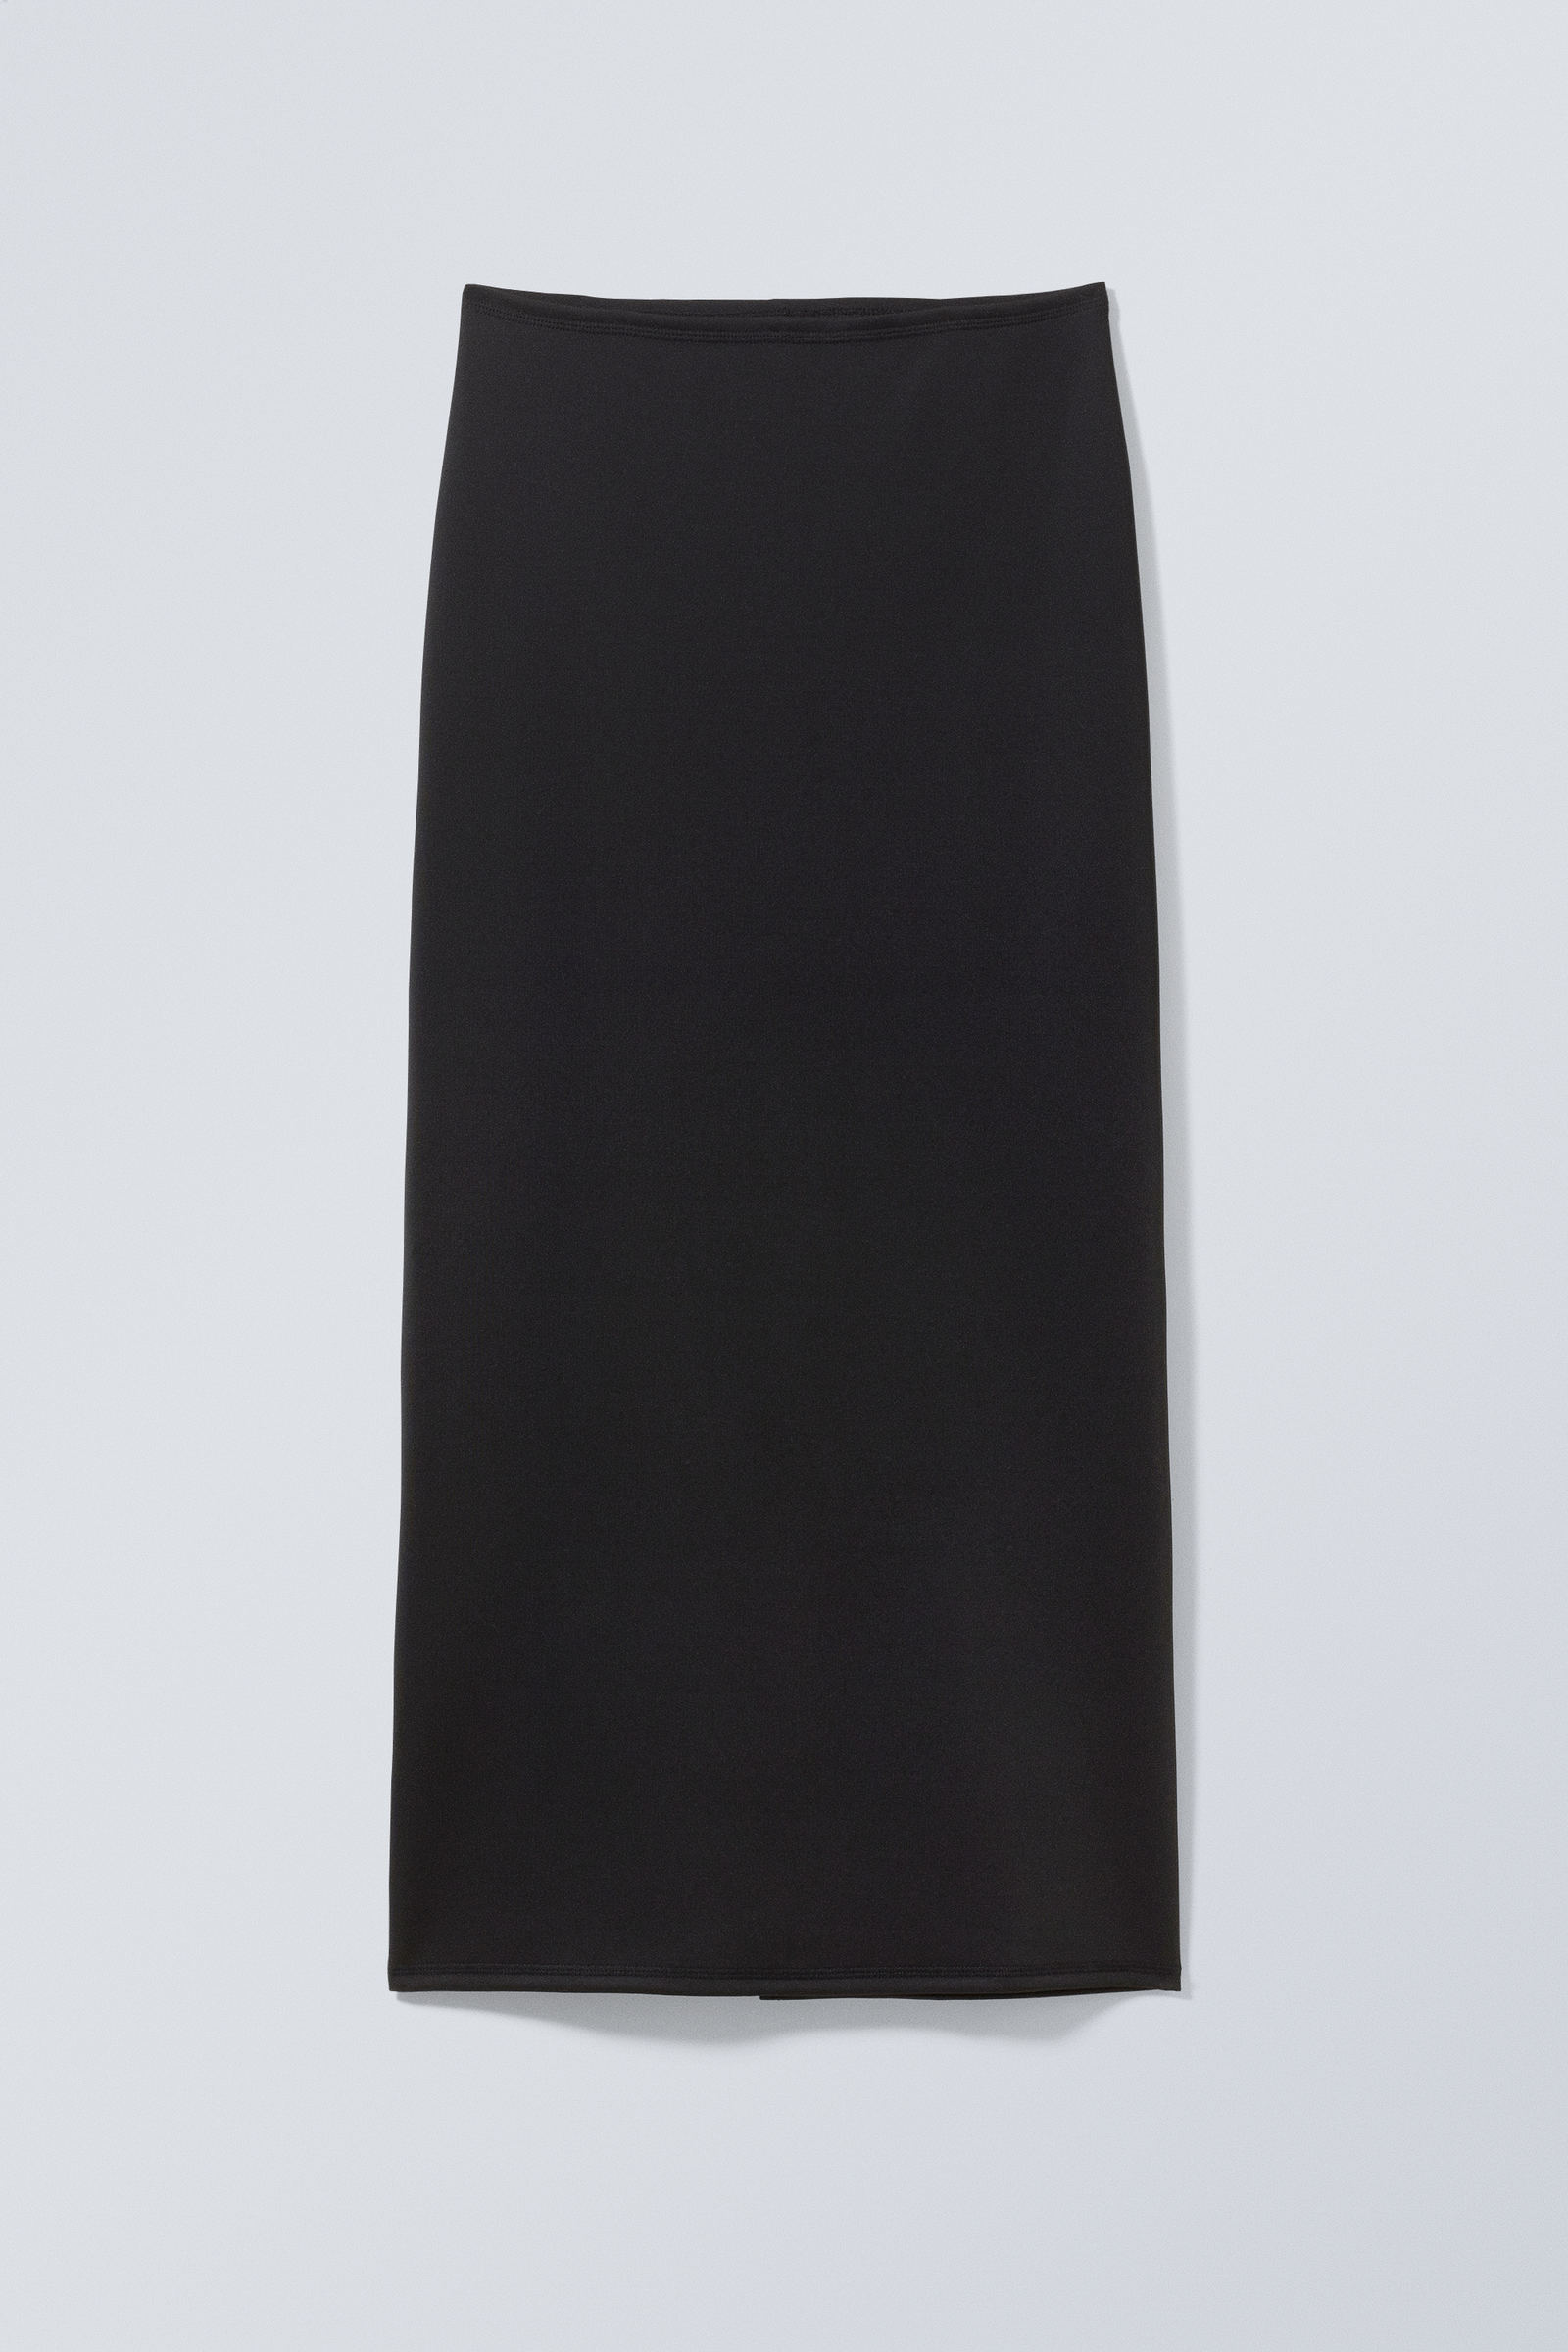 #272628 - Minimal Long Skirt - 1